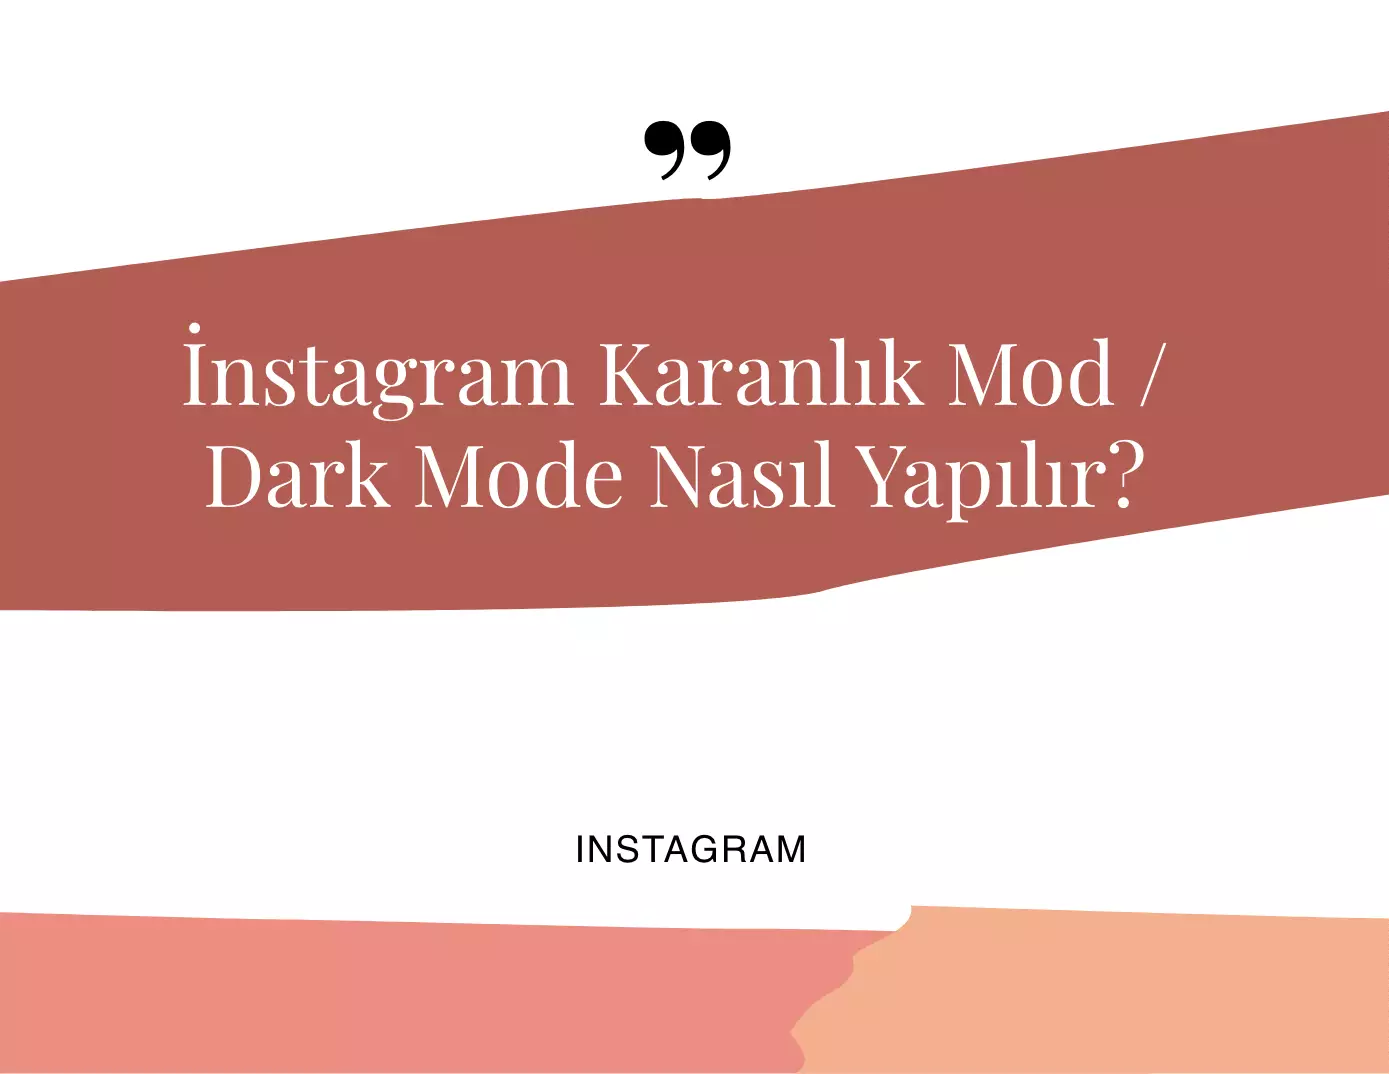 Instagram Karanlık Mod/Dark Mode Nasıl Yapılır?